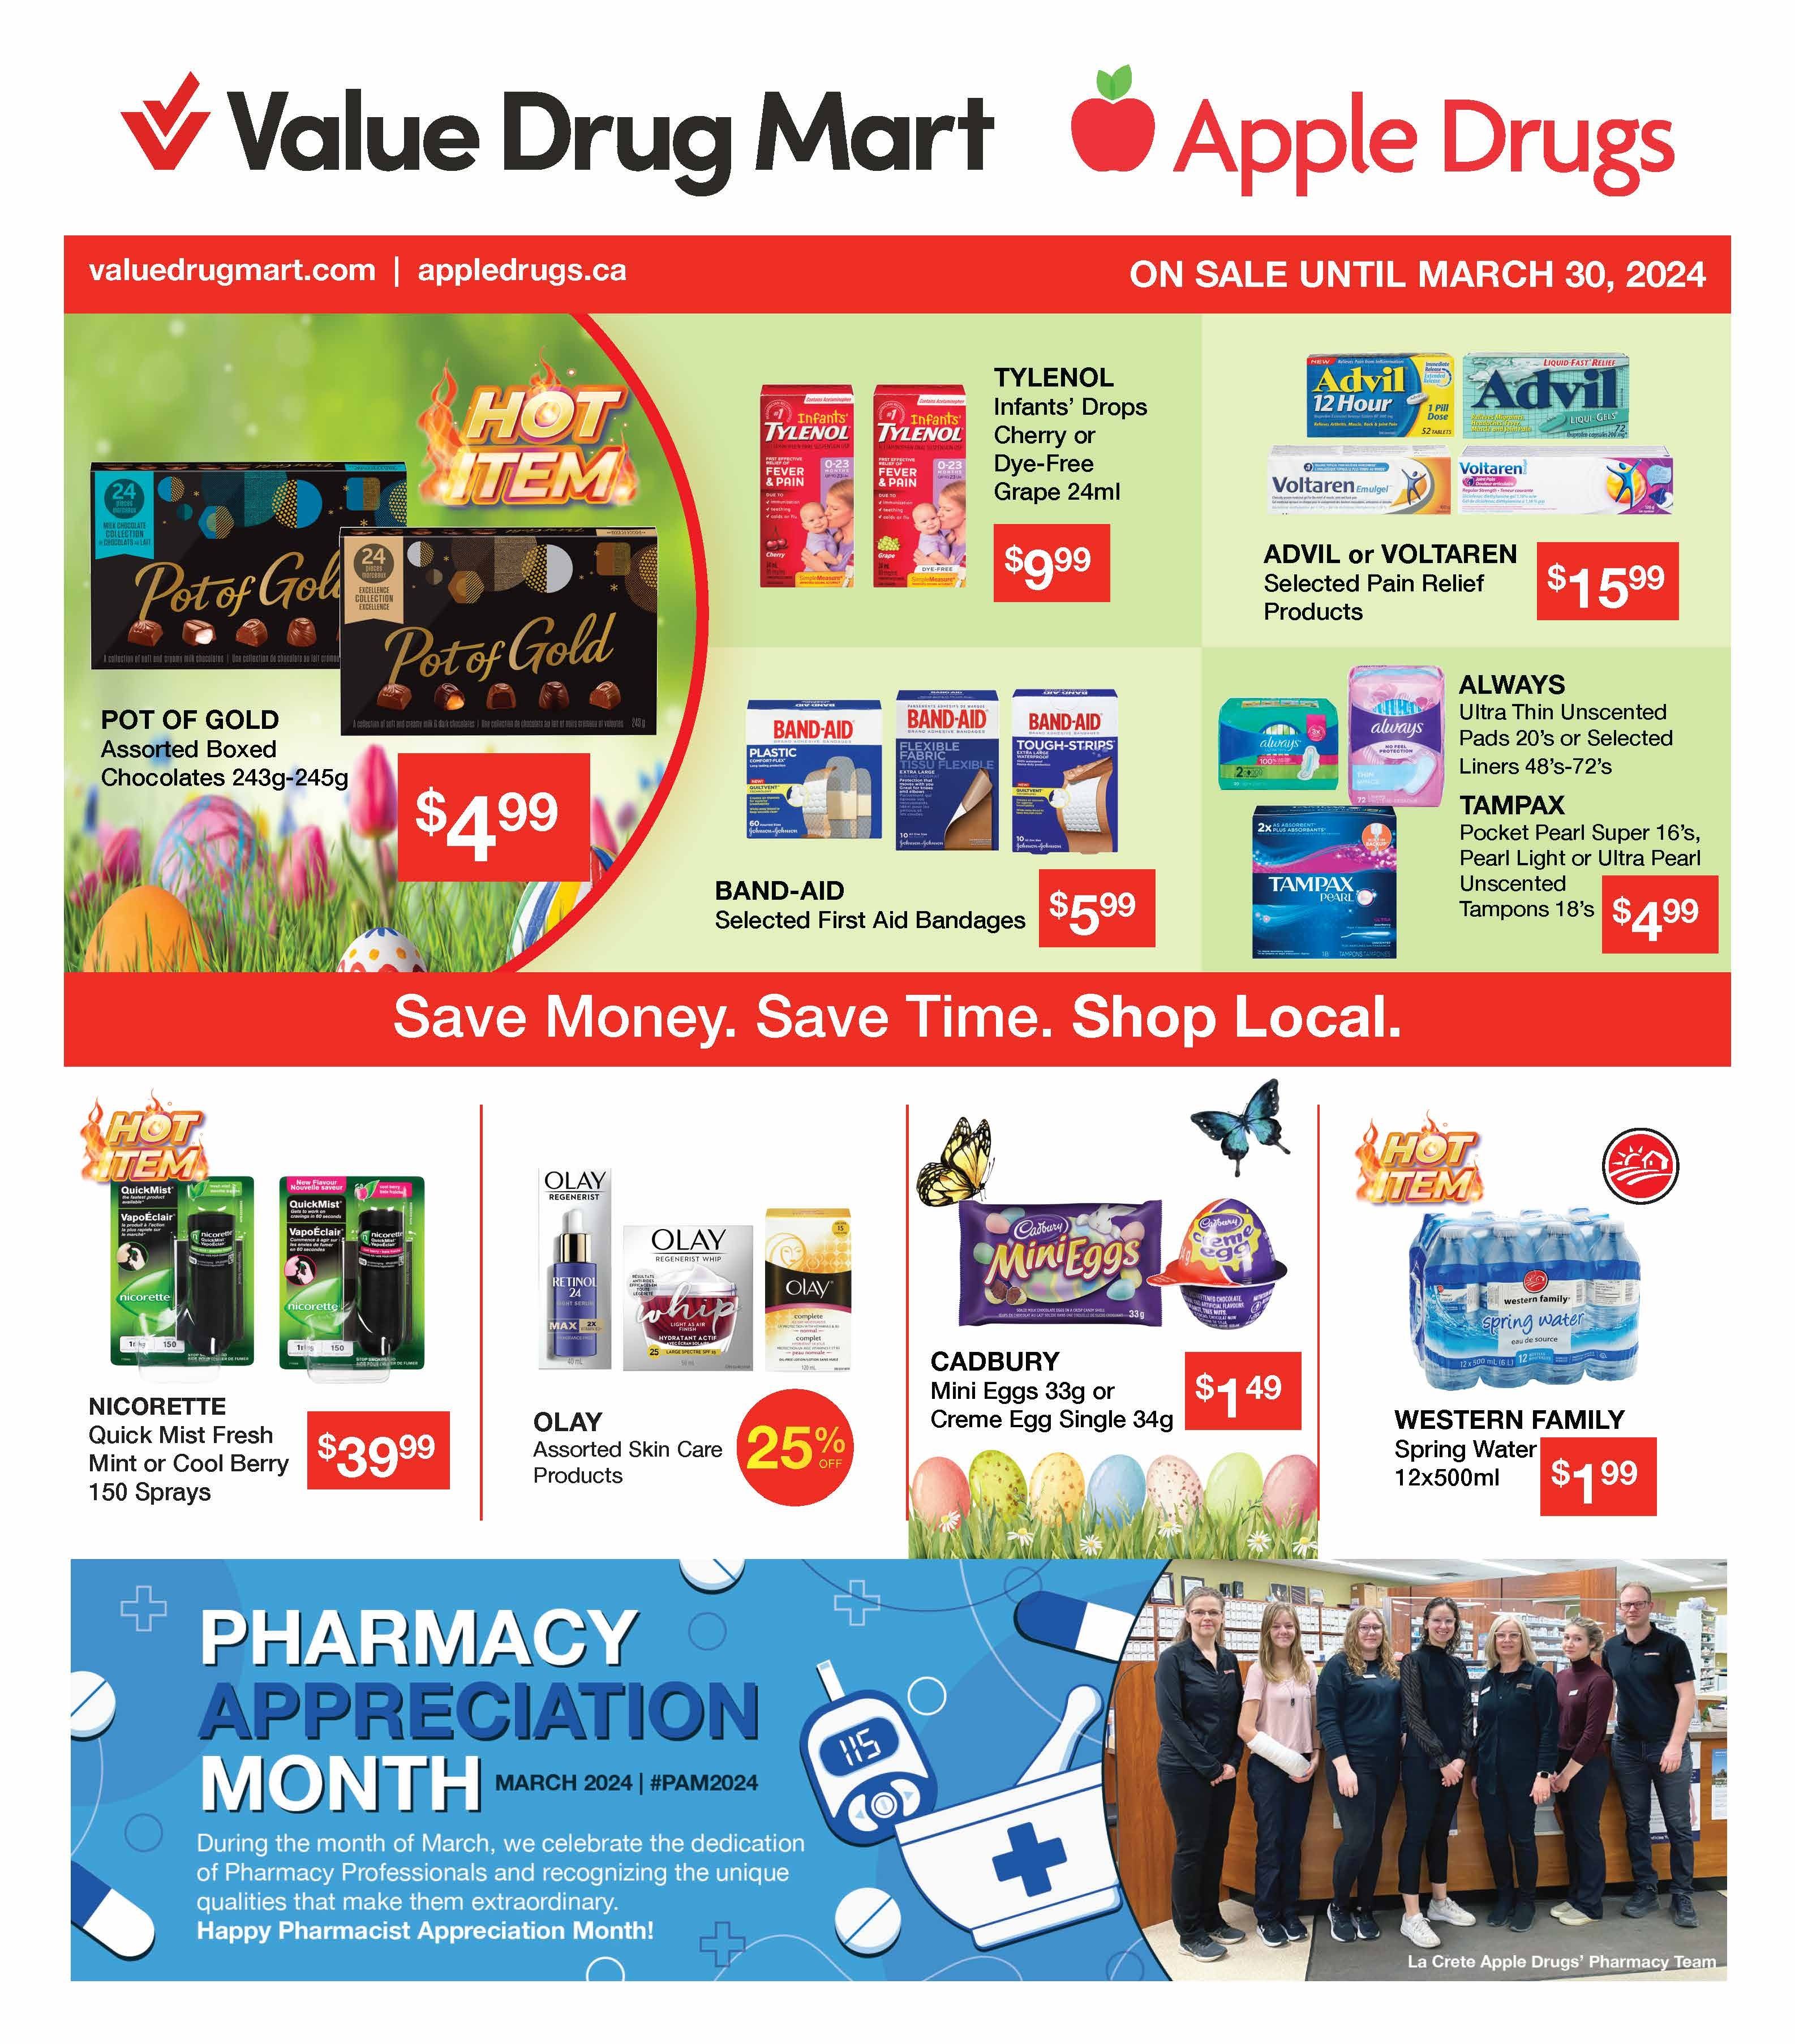 Value Drug Mart - 2 Weeks of Savings